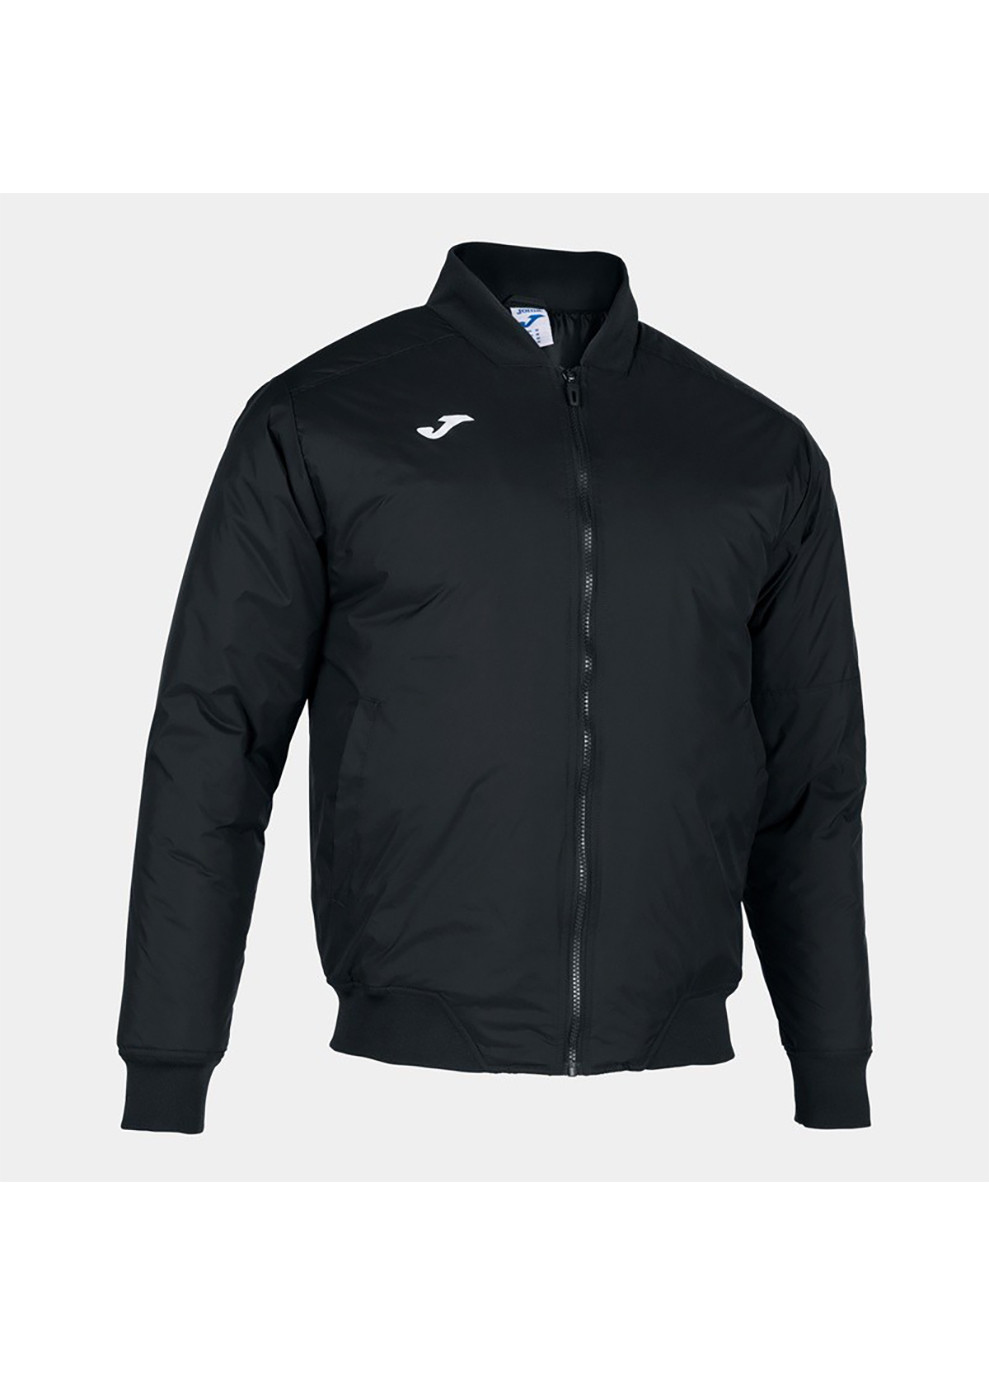 Черная демисезонная куртка мужская cervino bomber anorak черный Joma